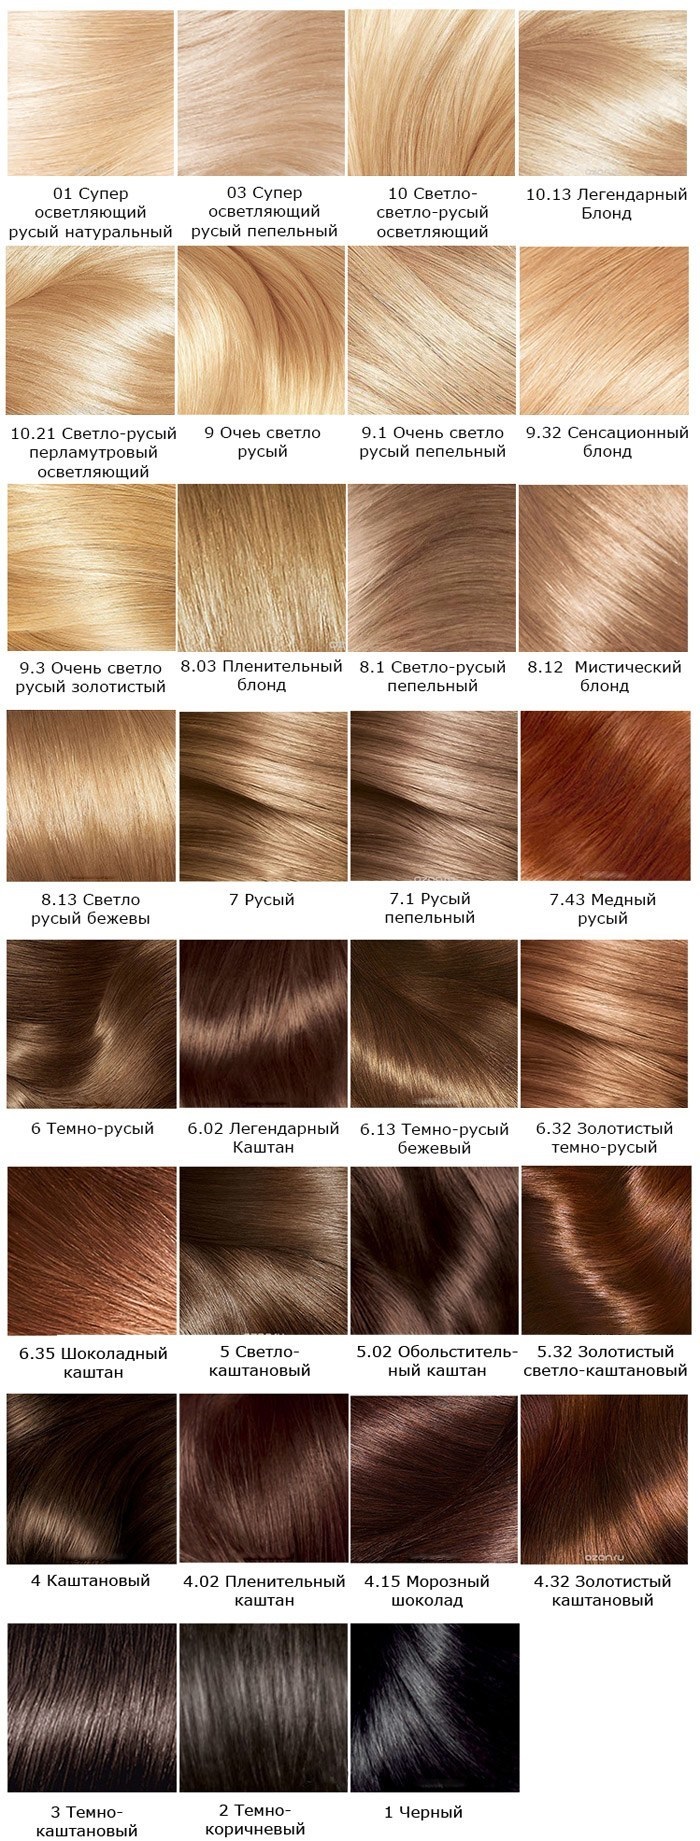 Farba do włosów Loreal Excellence. Paleta kolorów, zdjęcie, wybór odcienia, instrukcje barwienia